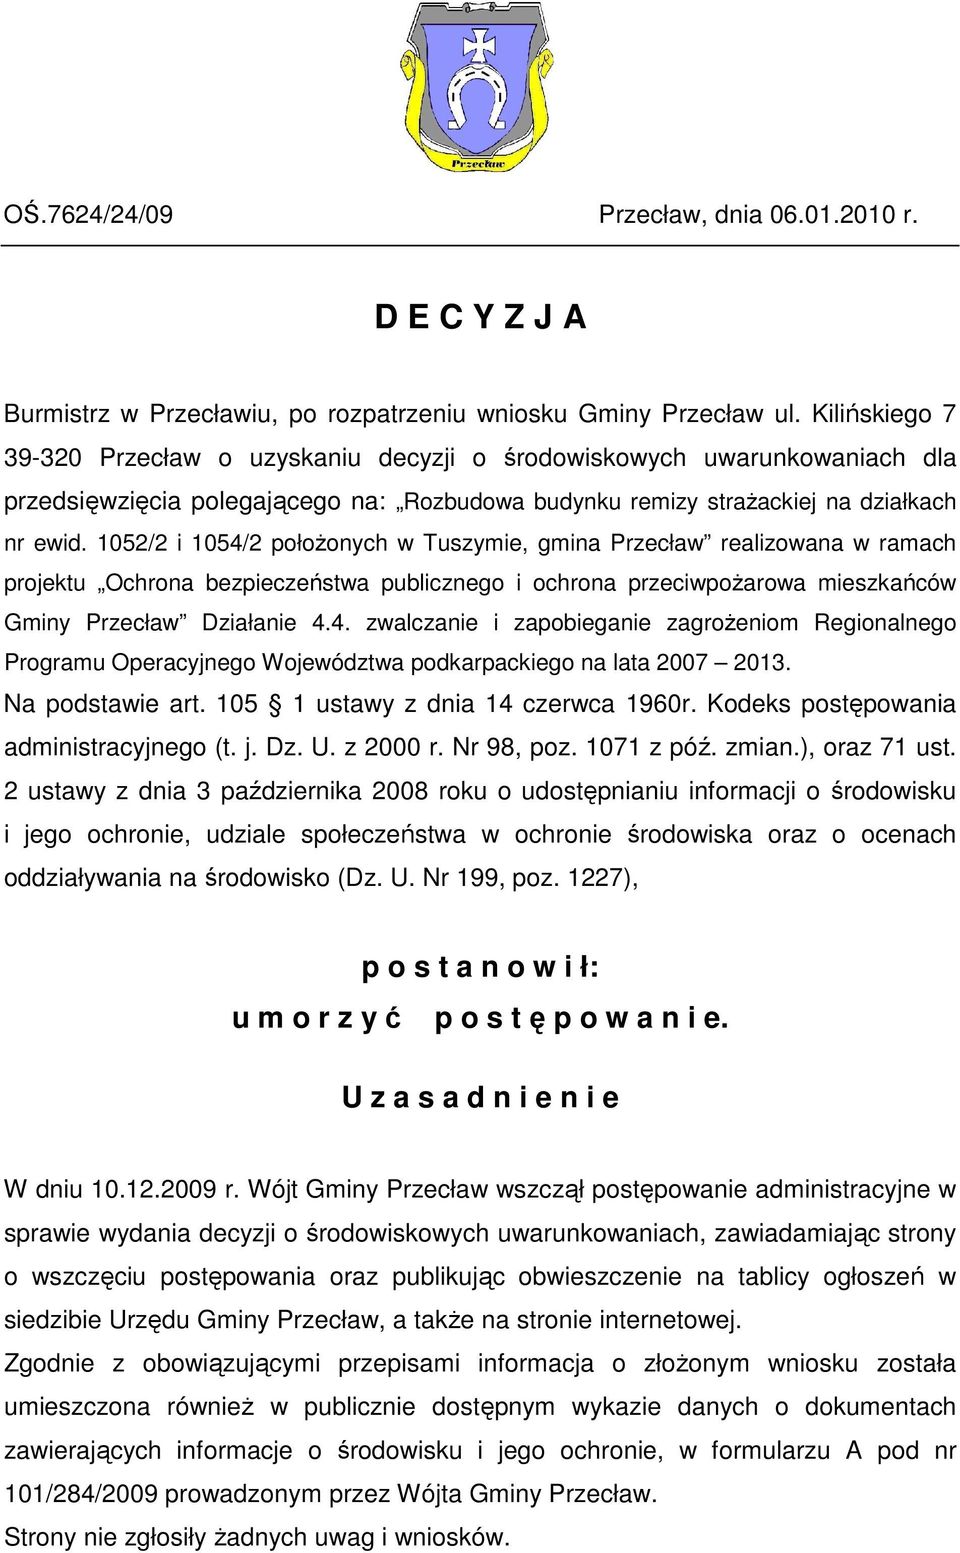 1052/2 i 1054/2 połoŝonych w Tuszymie, gmina Przecław realizowana w ramach projektu Ochrona bezpieczeństwa publicznego i ochrona przeciwpoŝarowa mieszkańców Gminy Przecław Działanie 4.4. zwalczanie i zapobieganie zagroŝeniom Regionalnego Programu Operacyjnego Województwa podkarpackiego na lata 2007 2013.